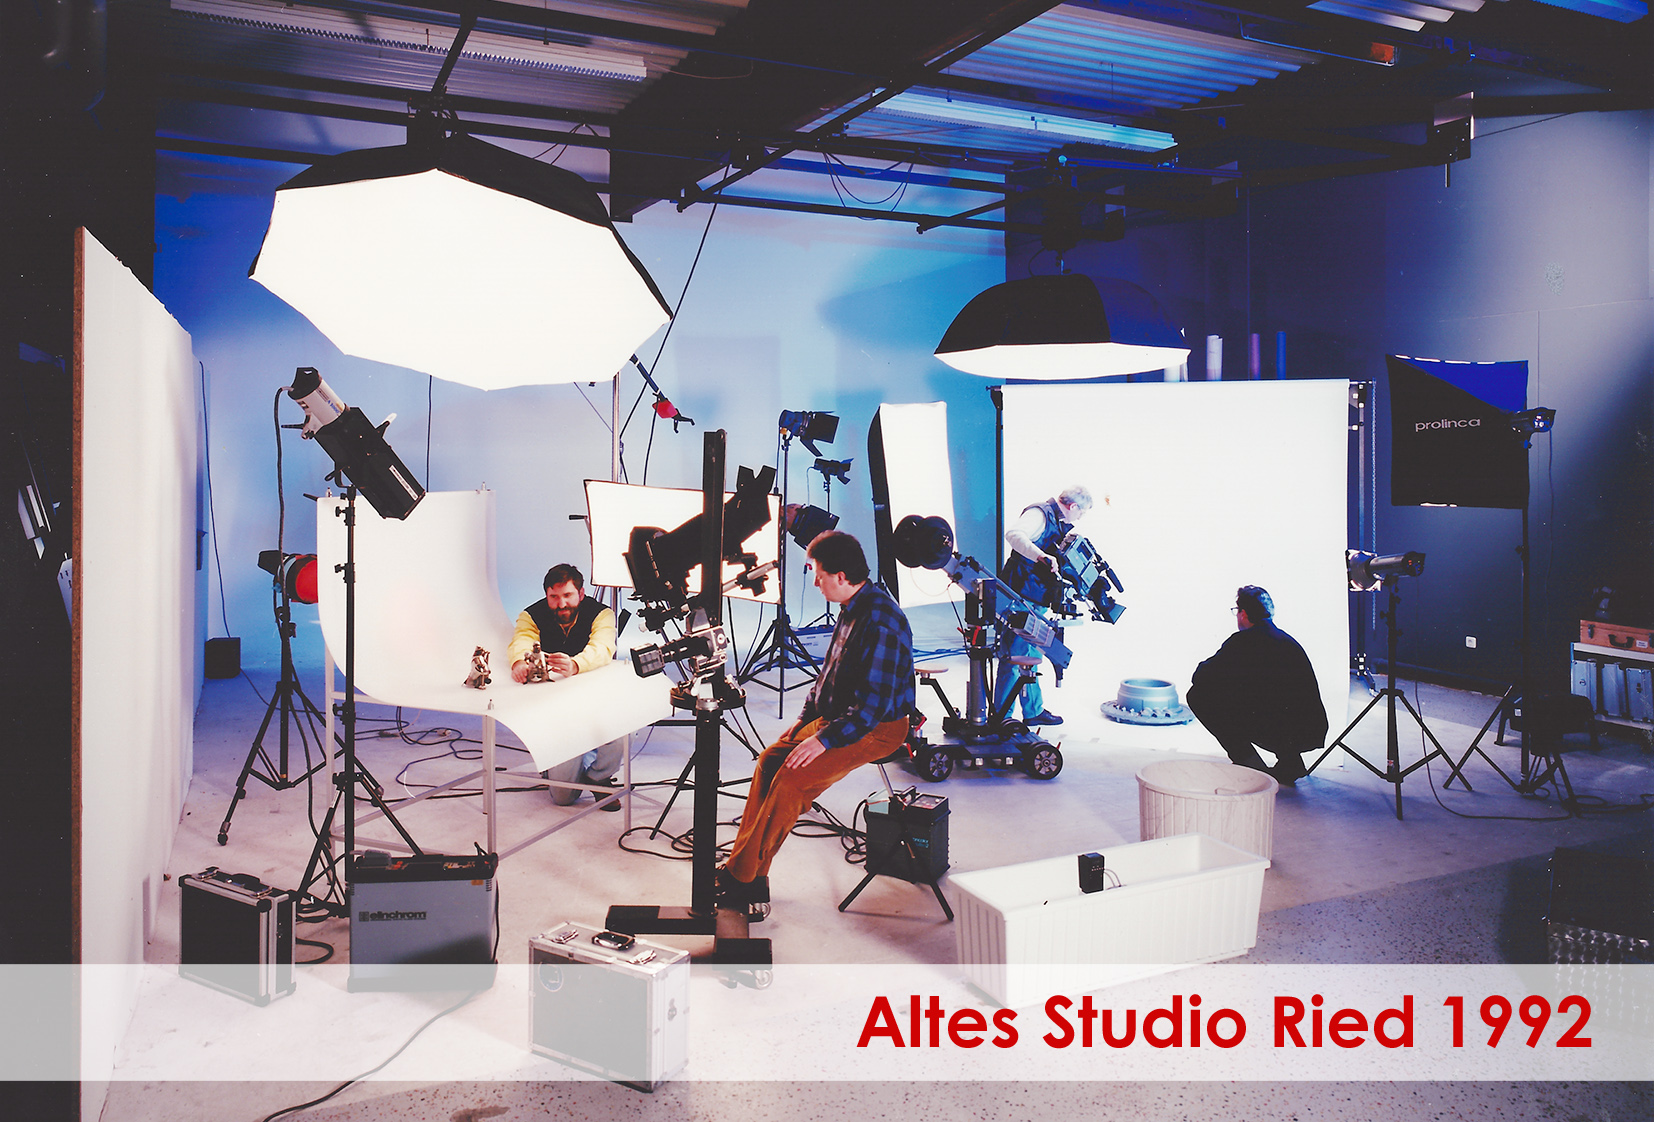 Altes Studio in Ried von Hannes Resch